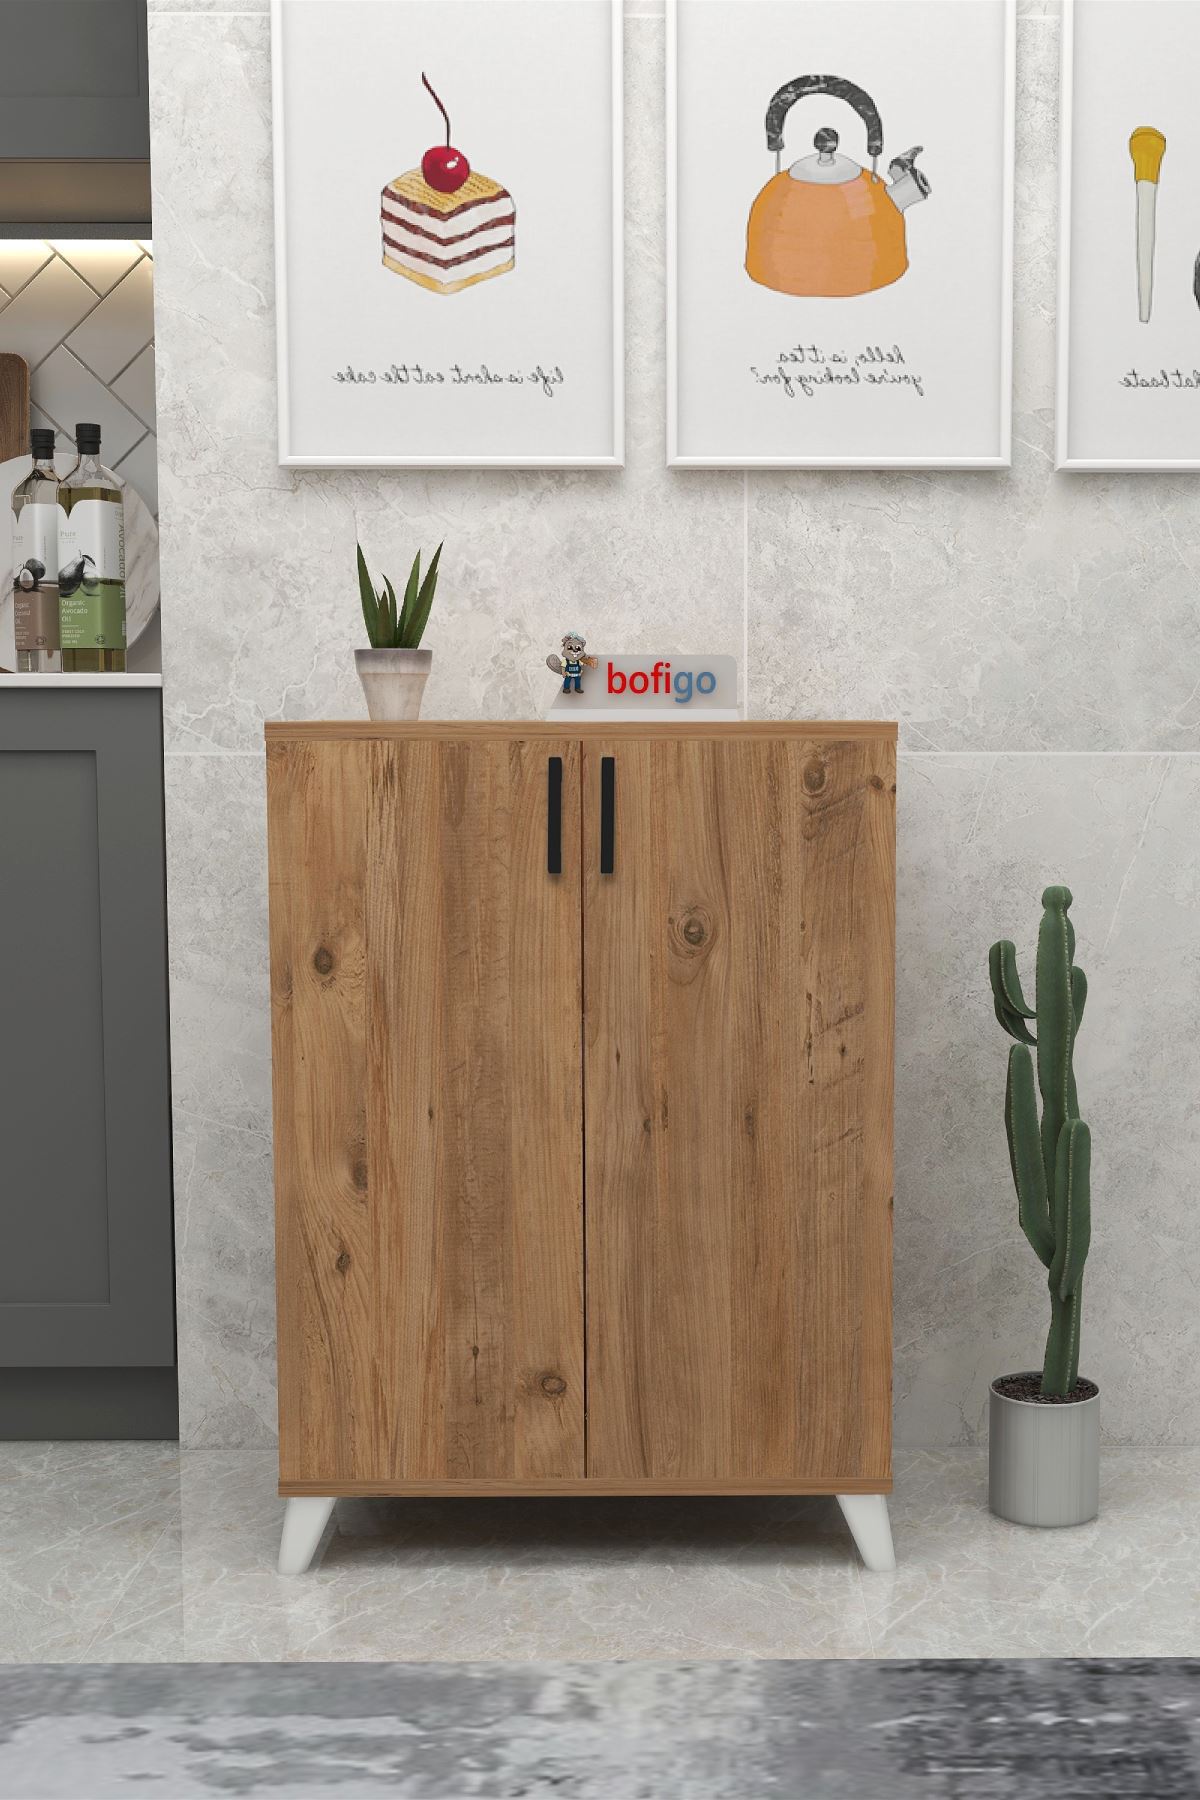 Bofigo Kitchen Cabinet with 5 Baskets Multi-Purpose Cupboard Crisper White